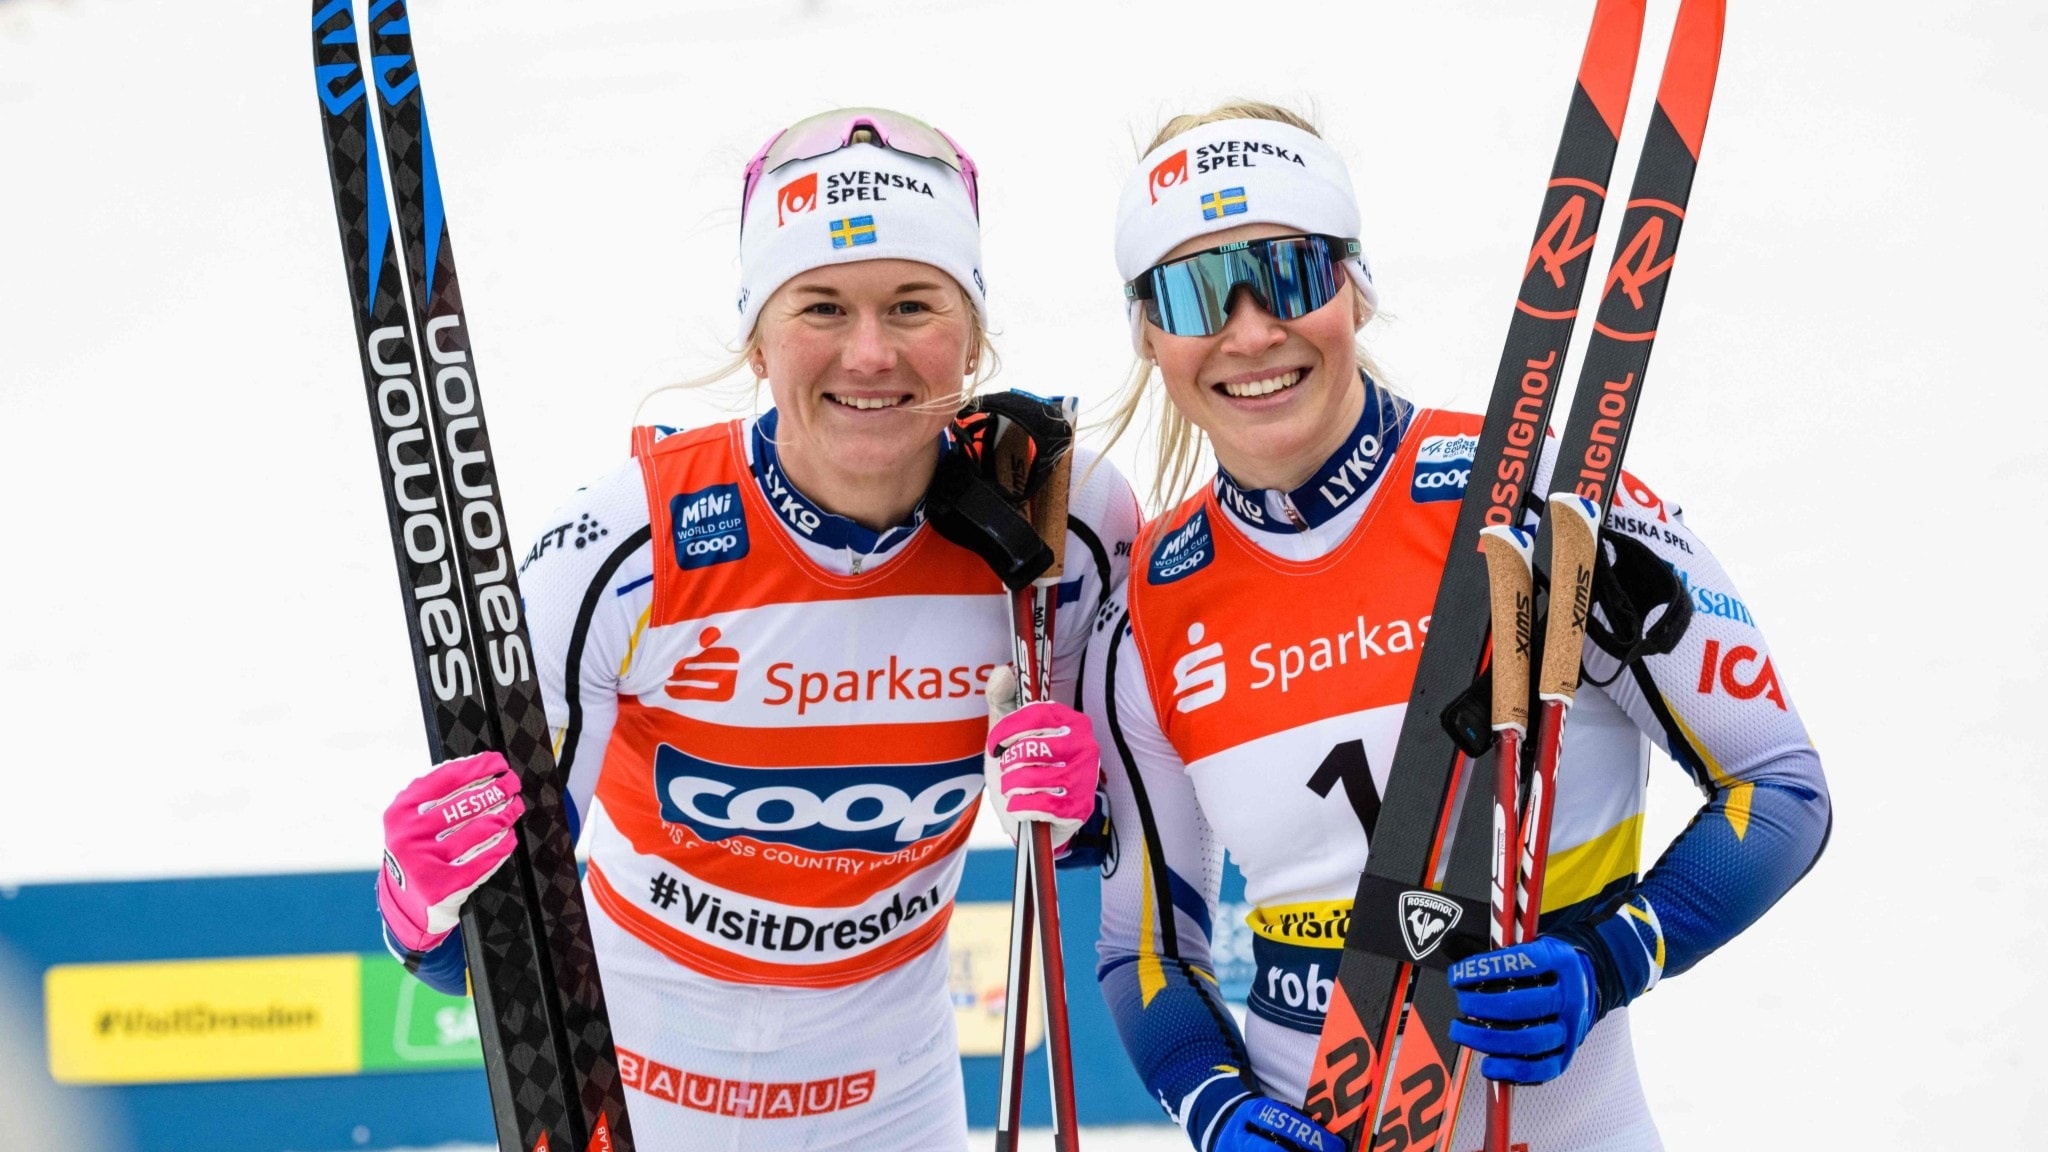 Jonna Sundling, Lagsprint champions, Dahlqvist duo, P4 Jmtland, 2050x1160 HD Desktop